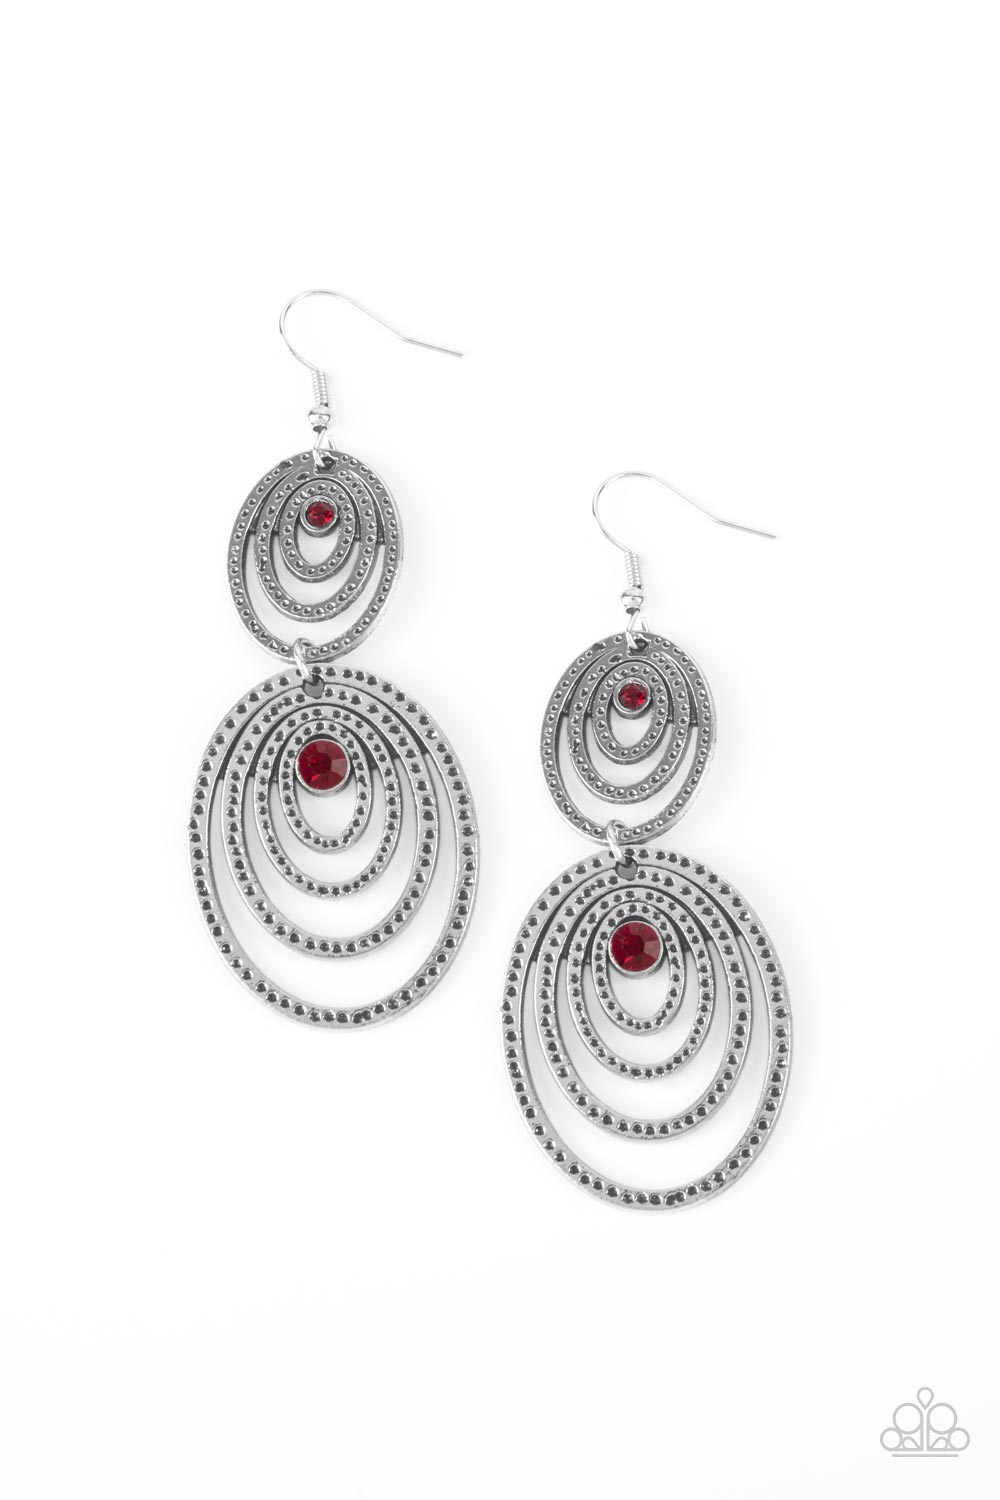 Cosmic Twirl - red - Paparazzi earrings